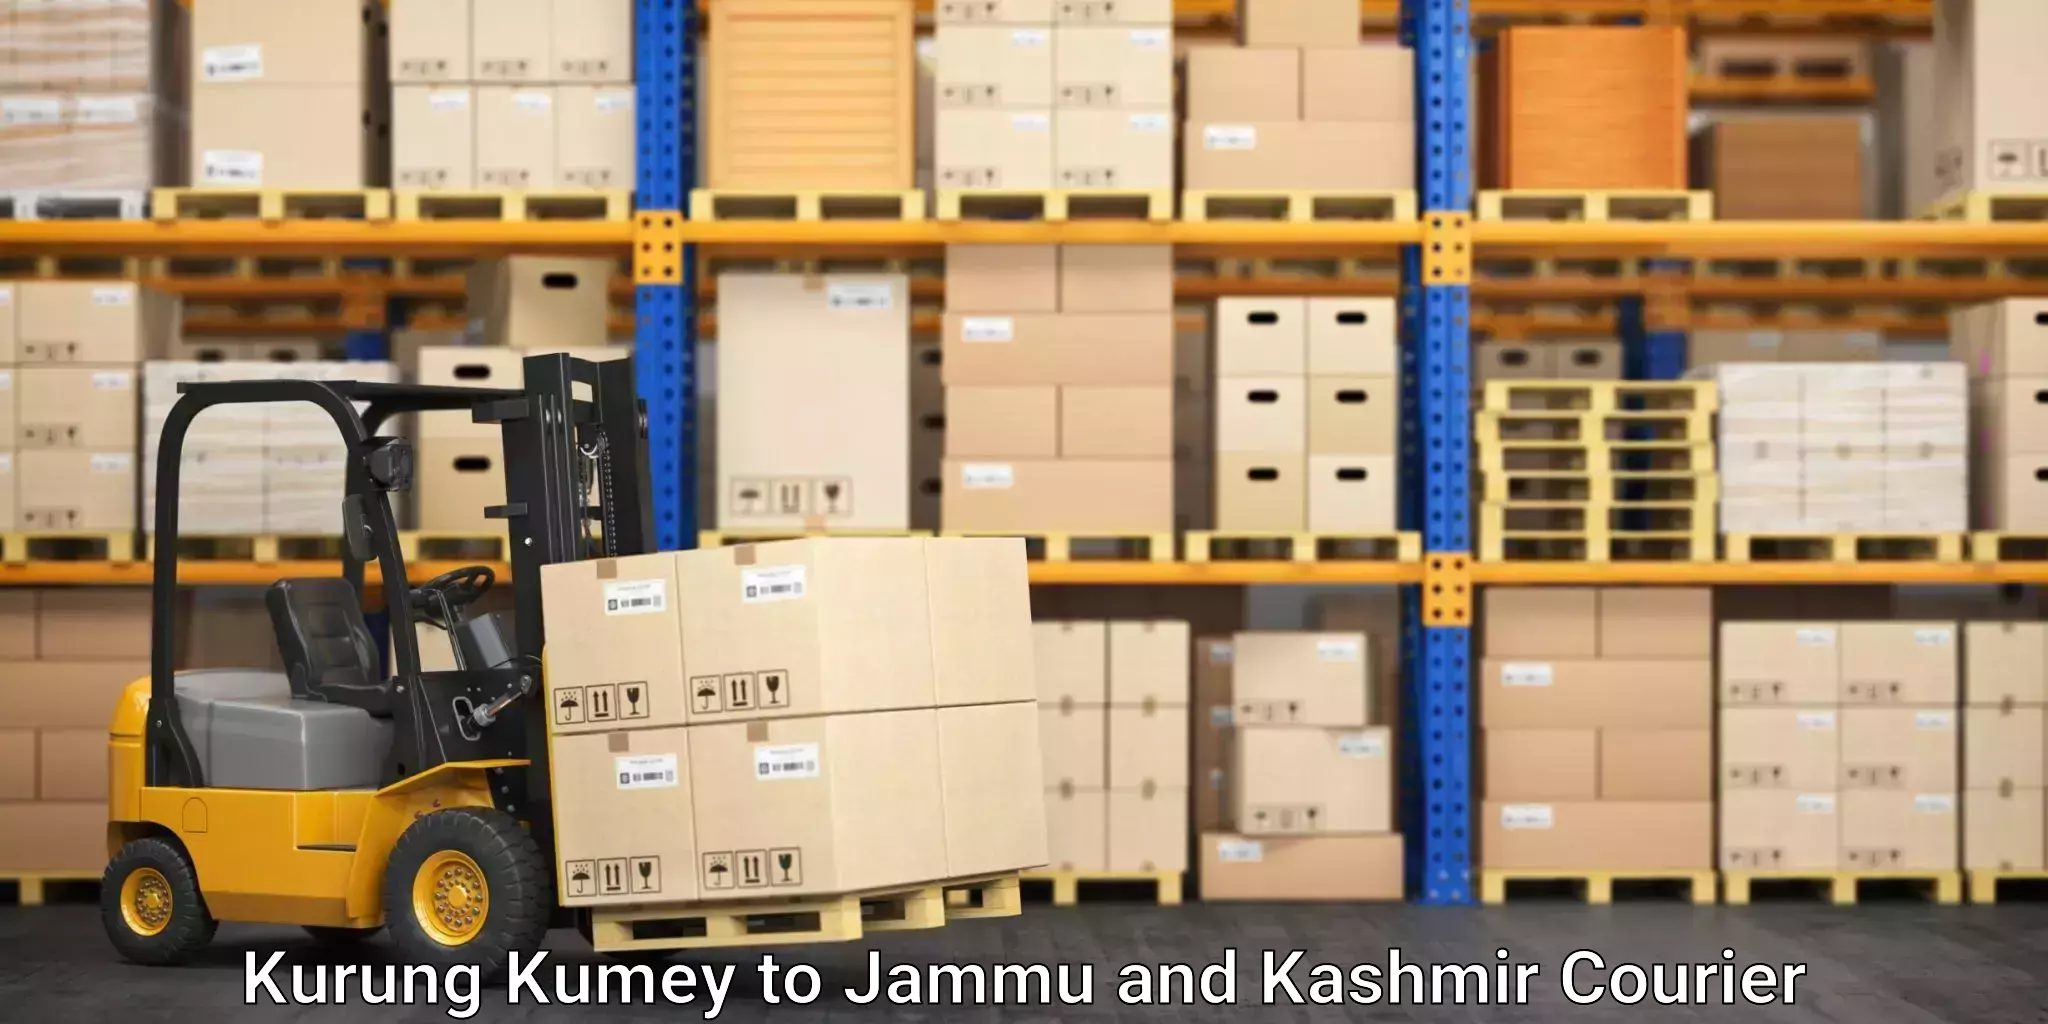 Sustainable shipping practices Kurung Kumey to Pulwama